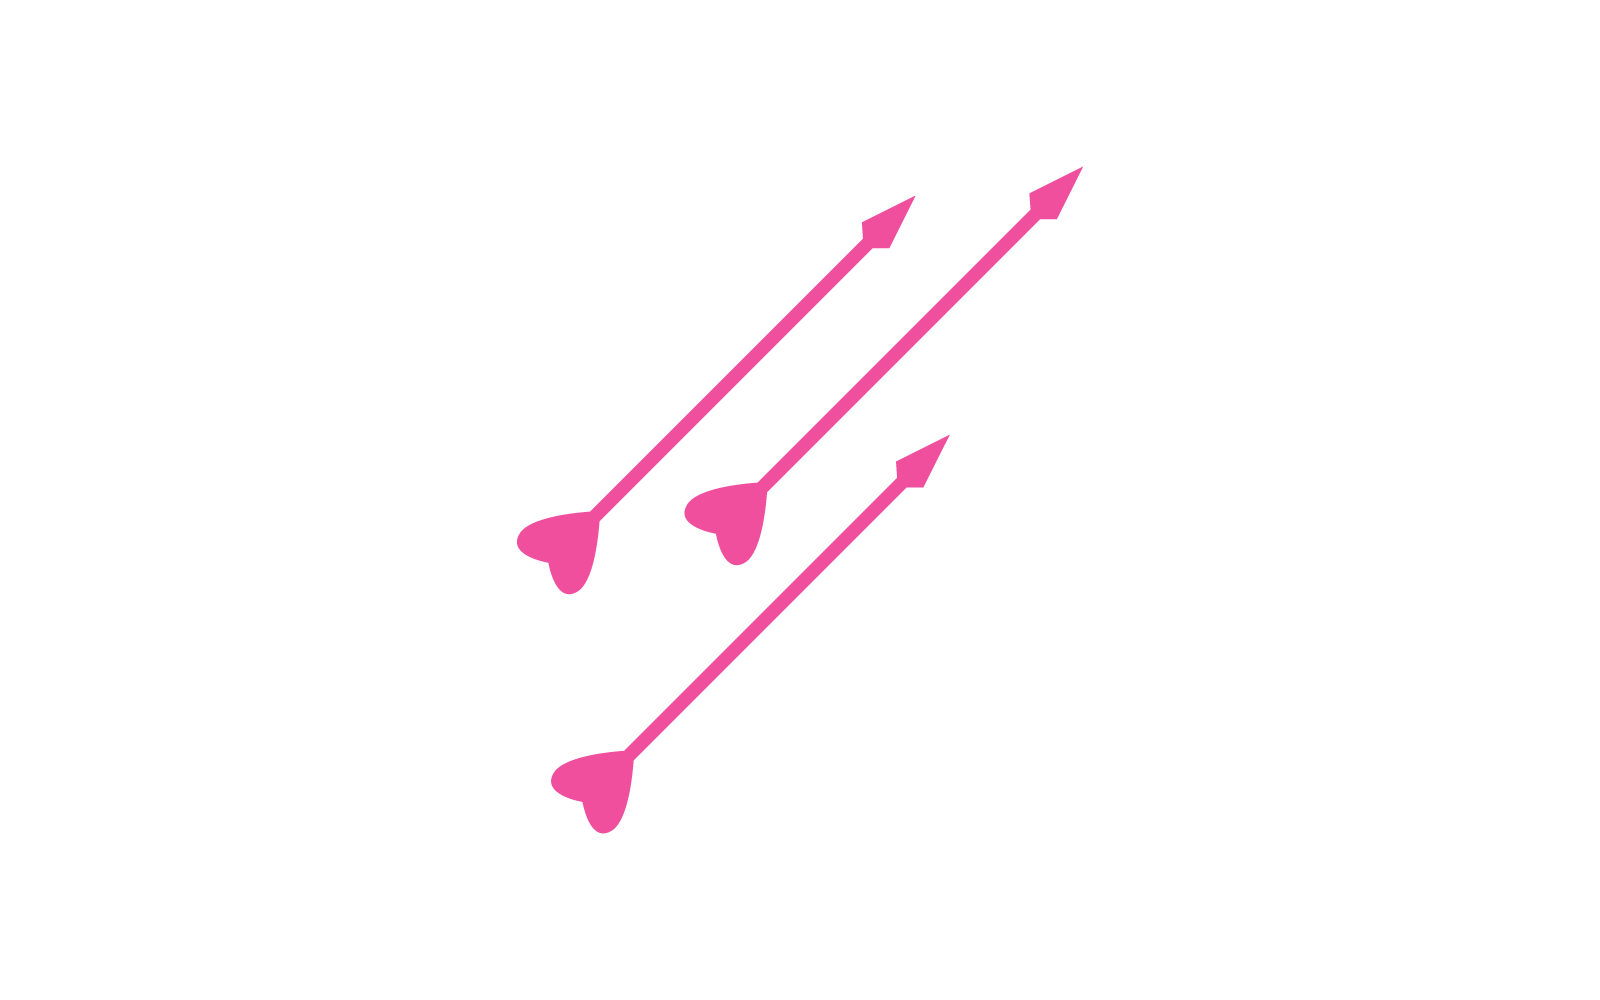 Love arrow logo vector design template